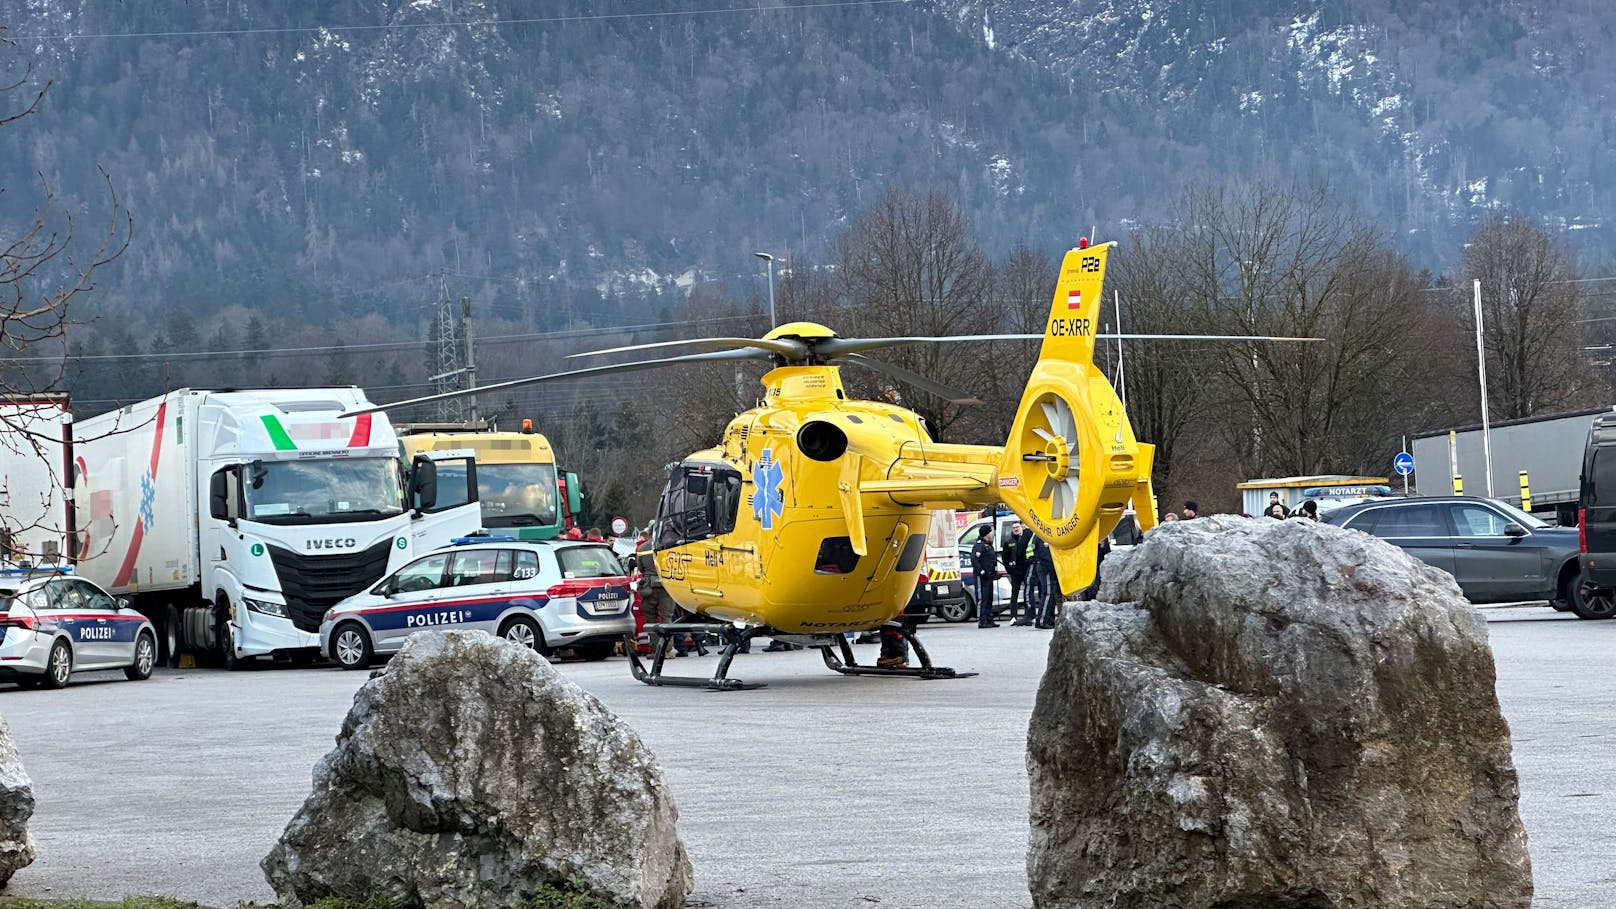 Er hatte sich aber offensichtlich unmittelbar zuvor eine erhebliche Stichverletzung mit einem Messer selbst zugezogen und musste mit dem Notarzthubschrauber in die Klinik Innsbruck geflogen werden. 